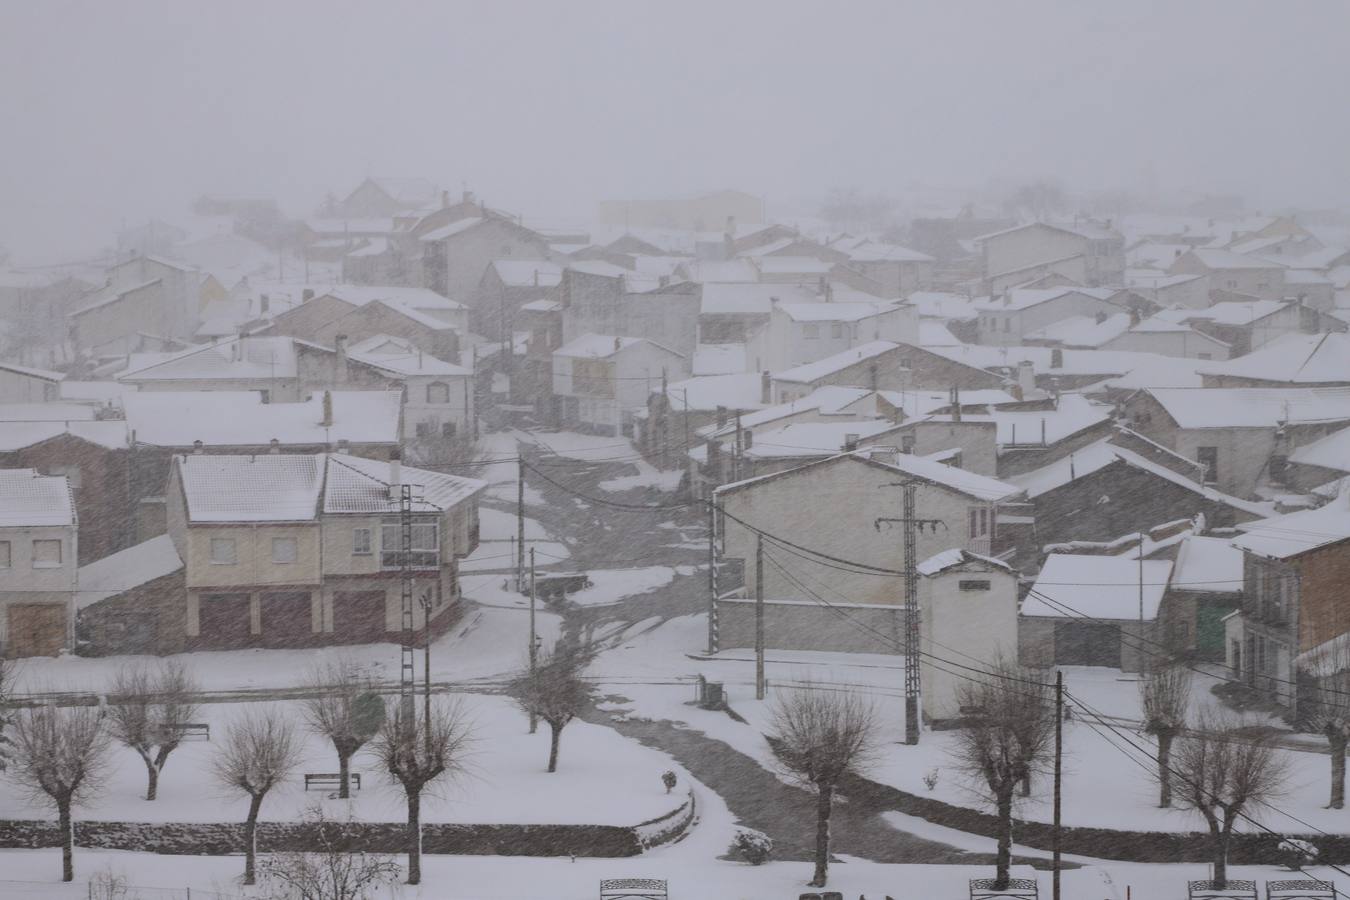 Imagen de la localidad abulense de Maello en medio de una intensa nevada.